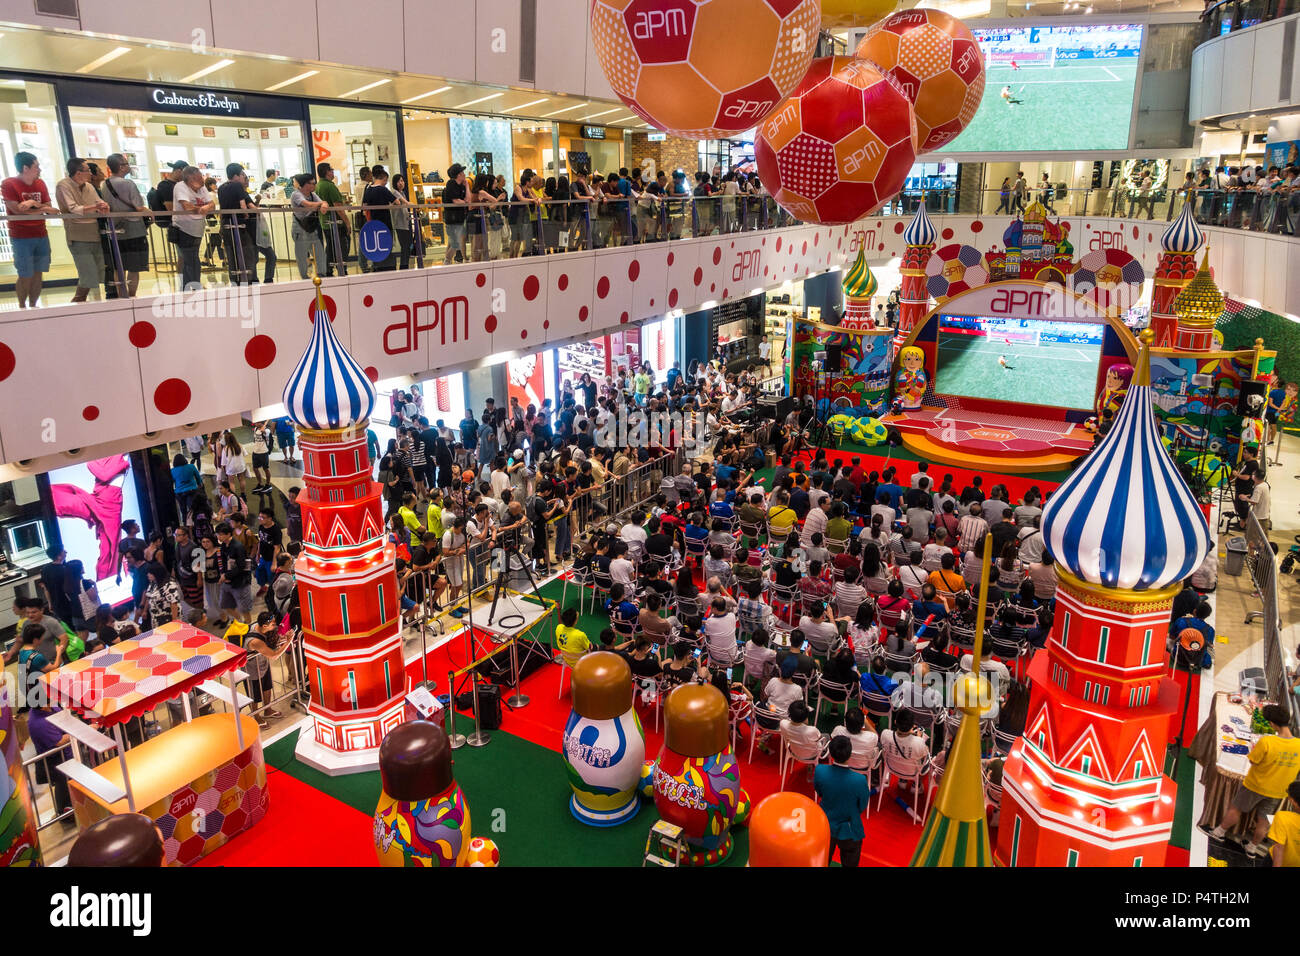 Chinesische Fußball-Fußball-Fans sehen WM-Spiel auf großen Bildschirmen in China Stockfoto